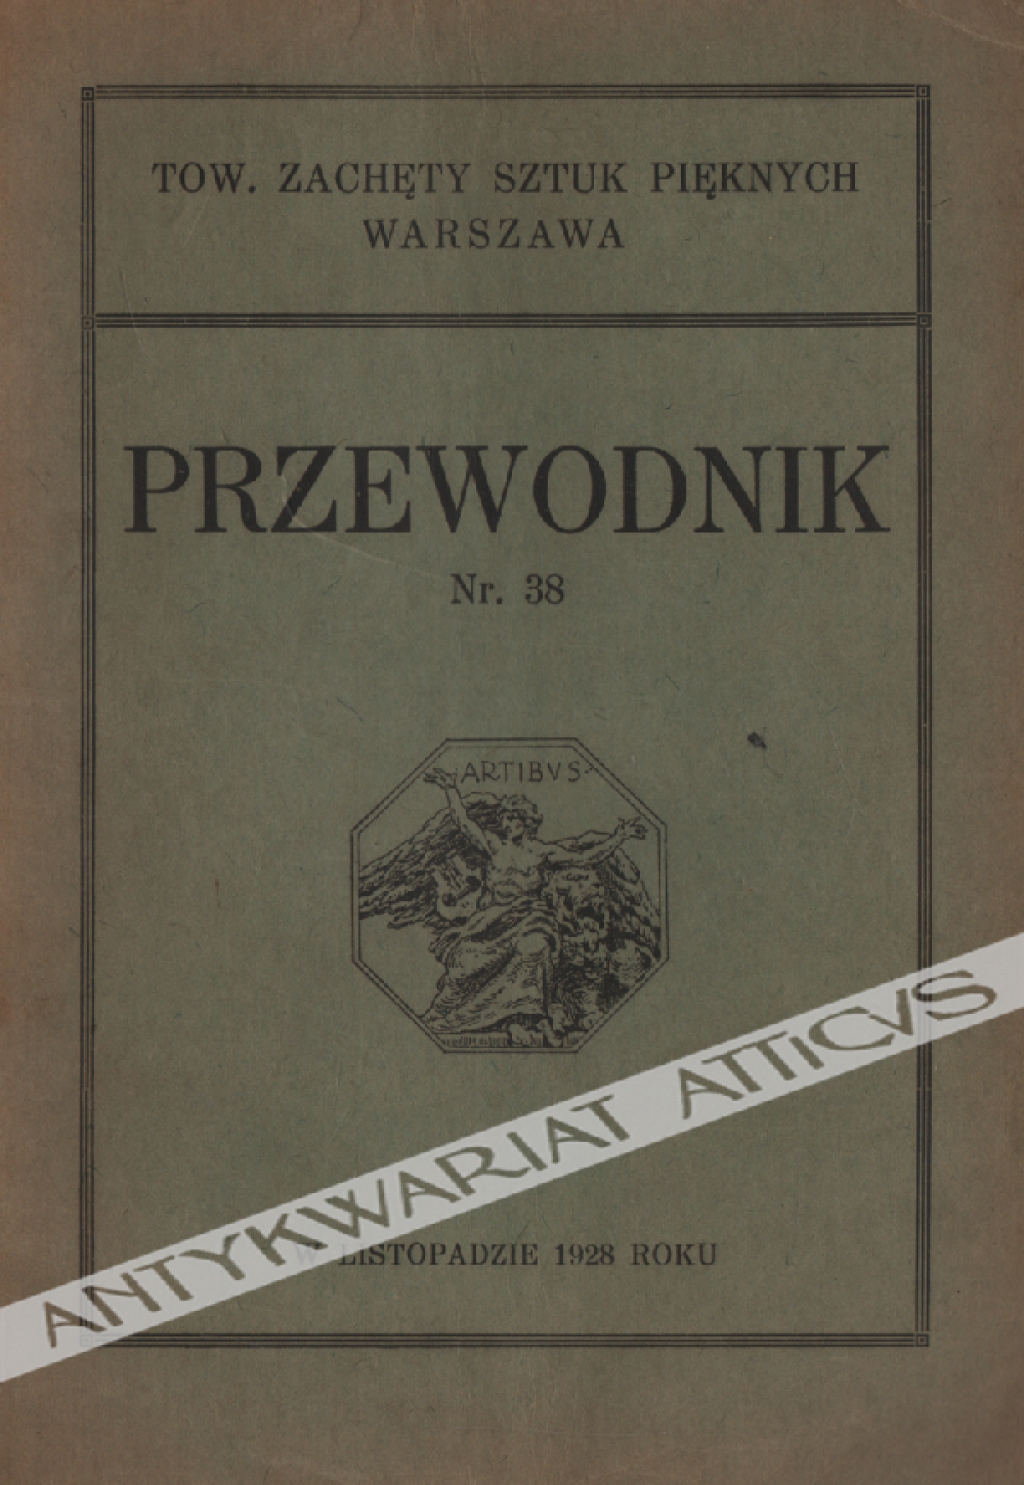 Przewodnik Nr. 38 listopad 1928 po wystawie Tow. Zachęty Sztuk Pięknych w Warszawie.